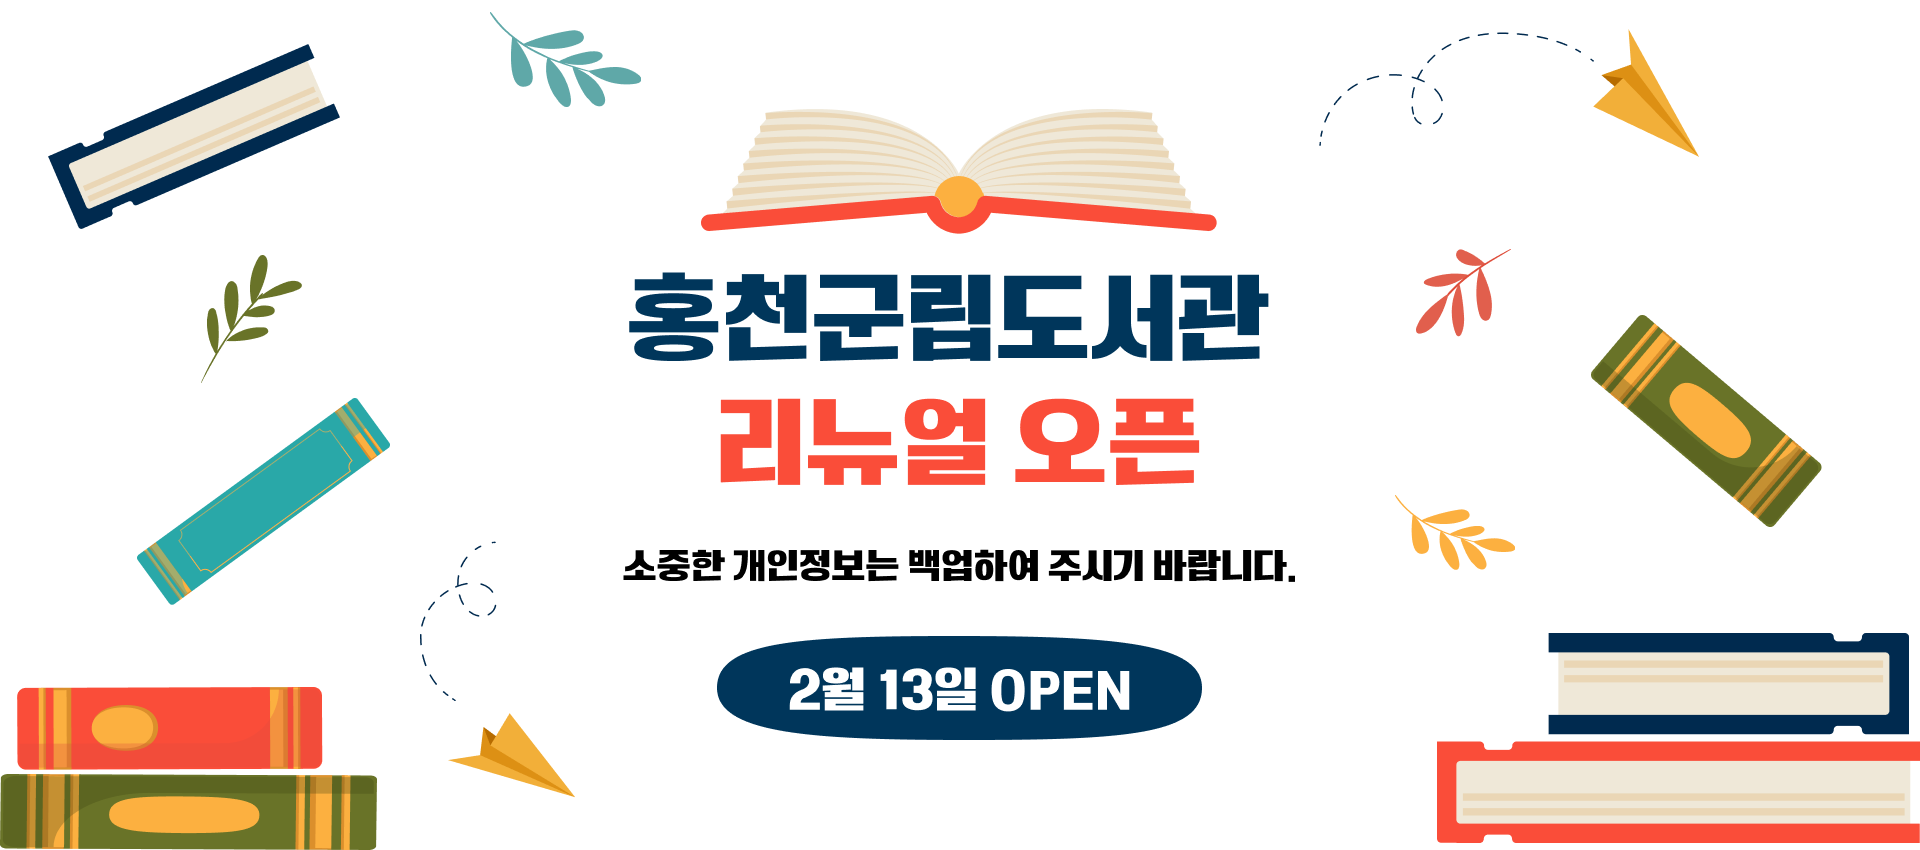 홍천군립도서관 리뉴얼 오픈 소중한 개인정보는 백업하셔주시기 바랍니다. 2월 13일 오픈